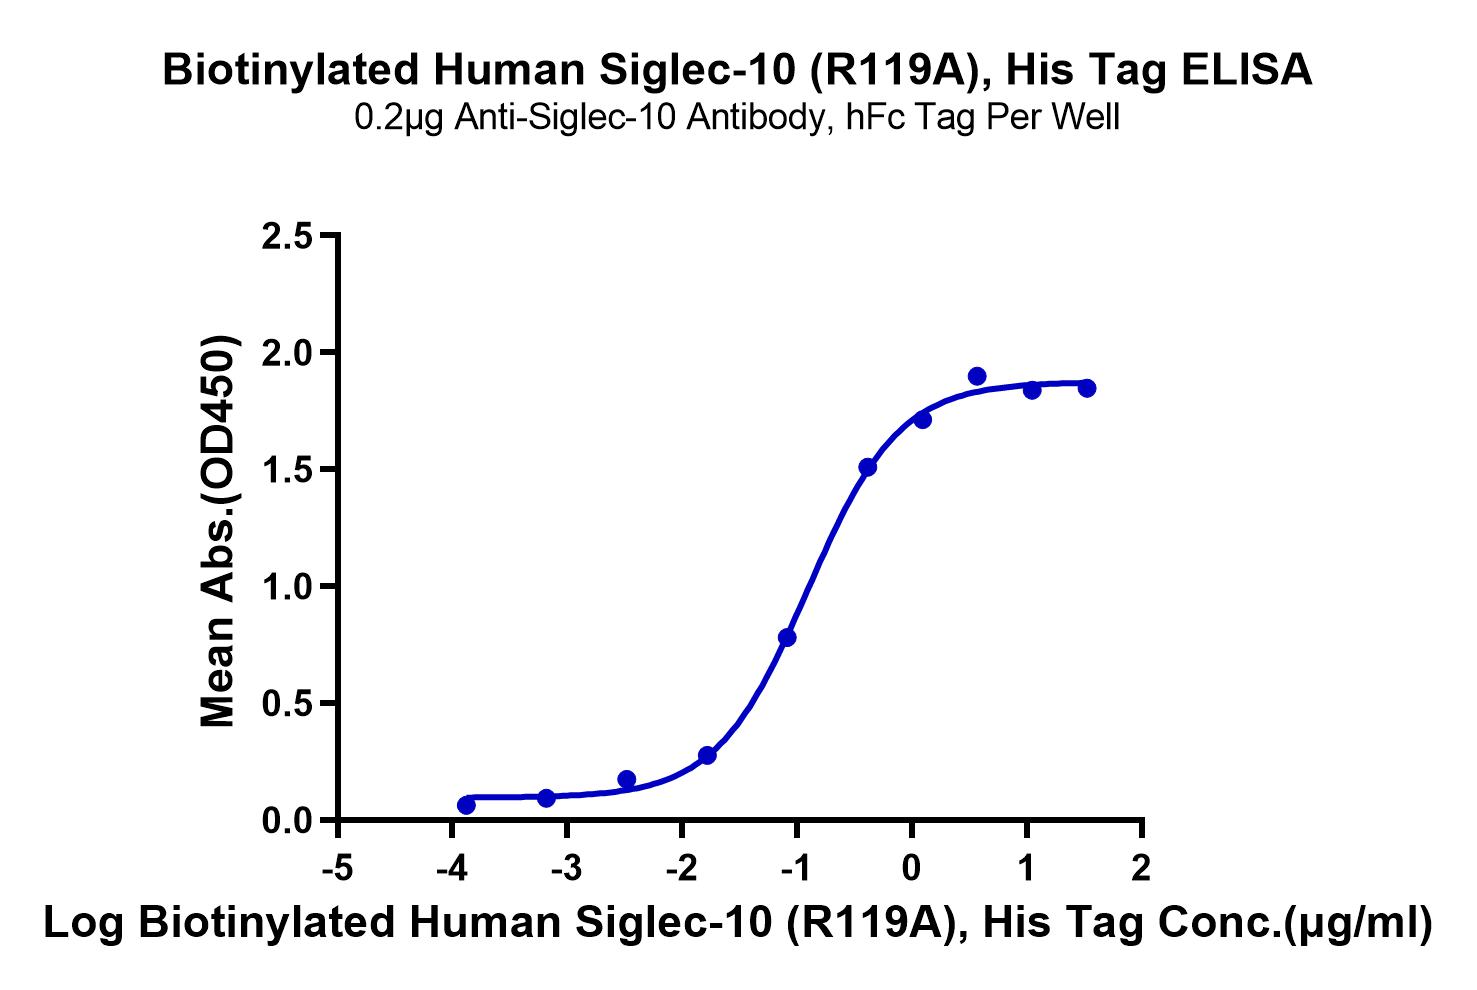 Biotinylated Human Siglec-10 (R119A) Protein (LTP10213)